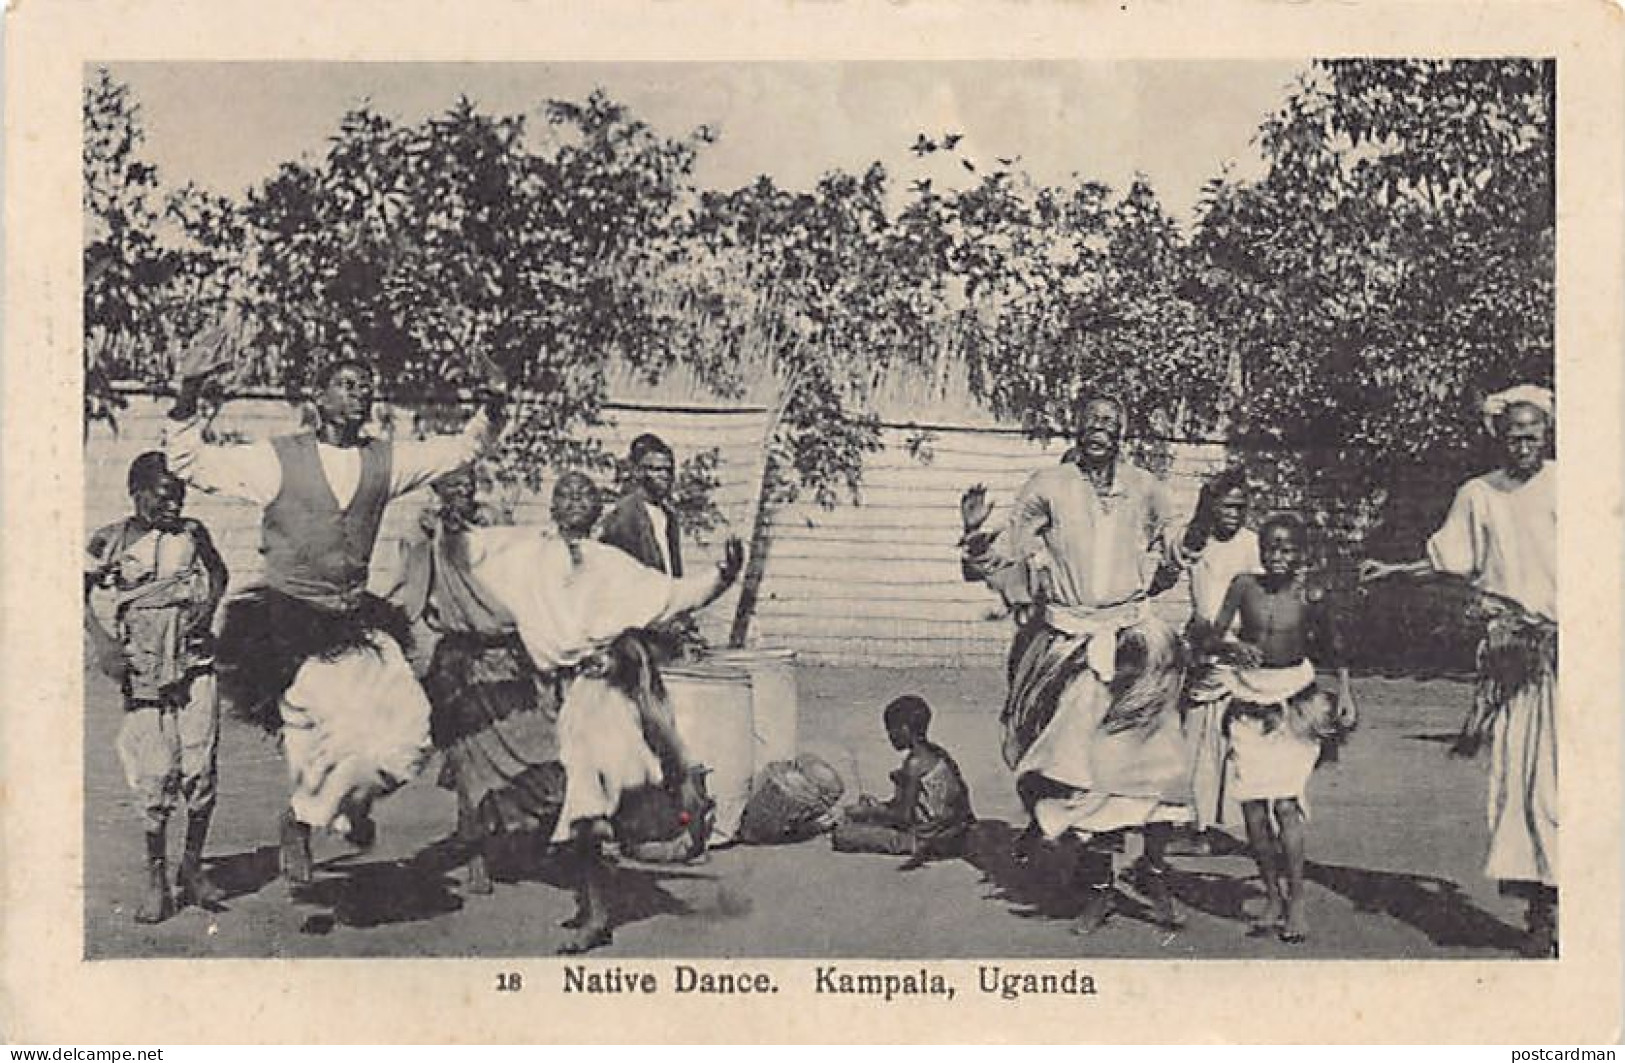 Uganda - KAMPALA - Native Dance - Publ. Alfred Lobo 18 - Uganda